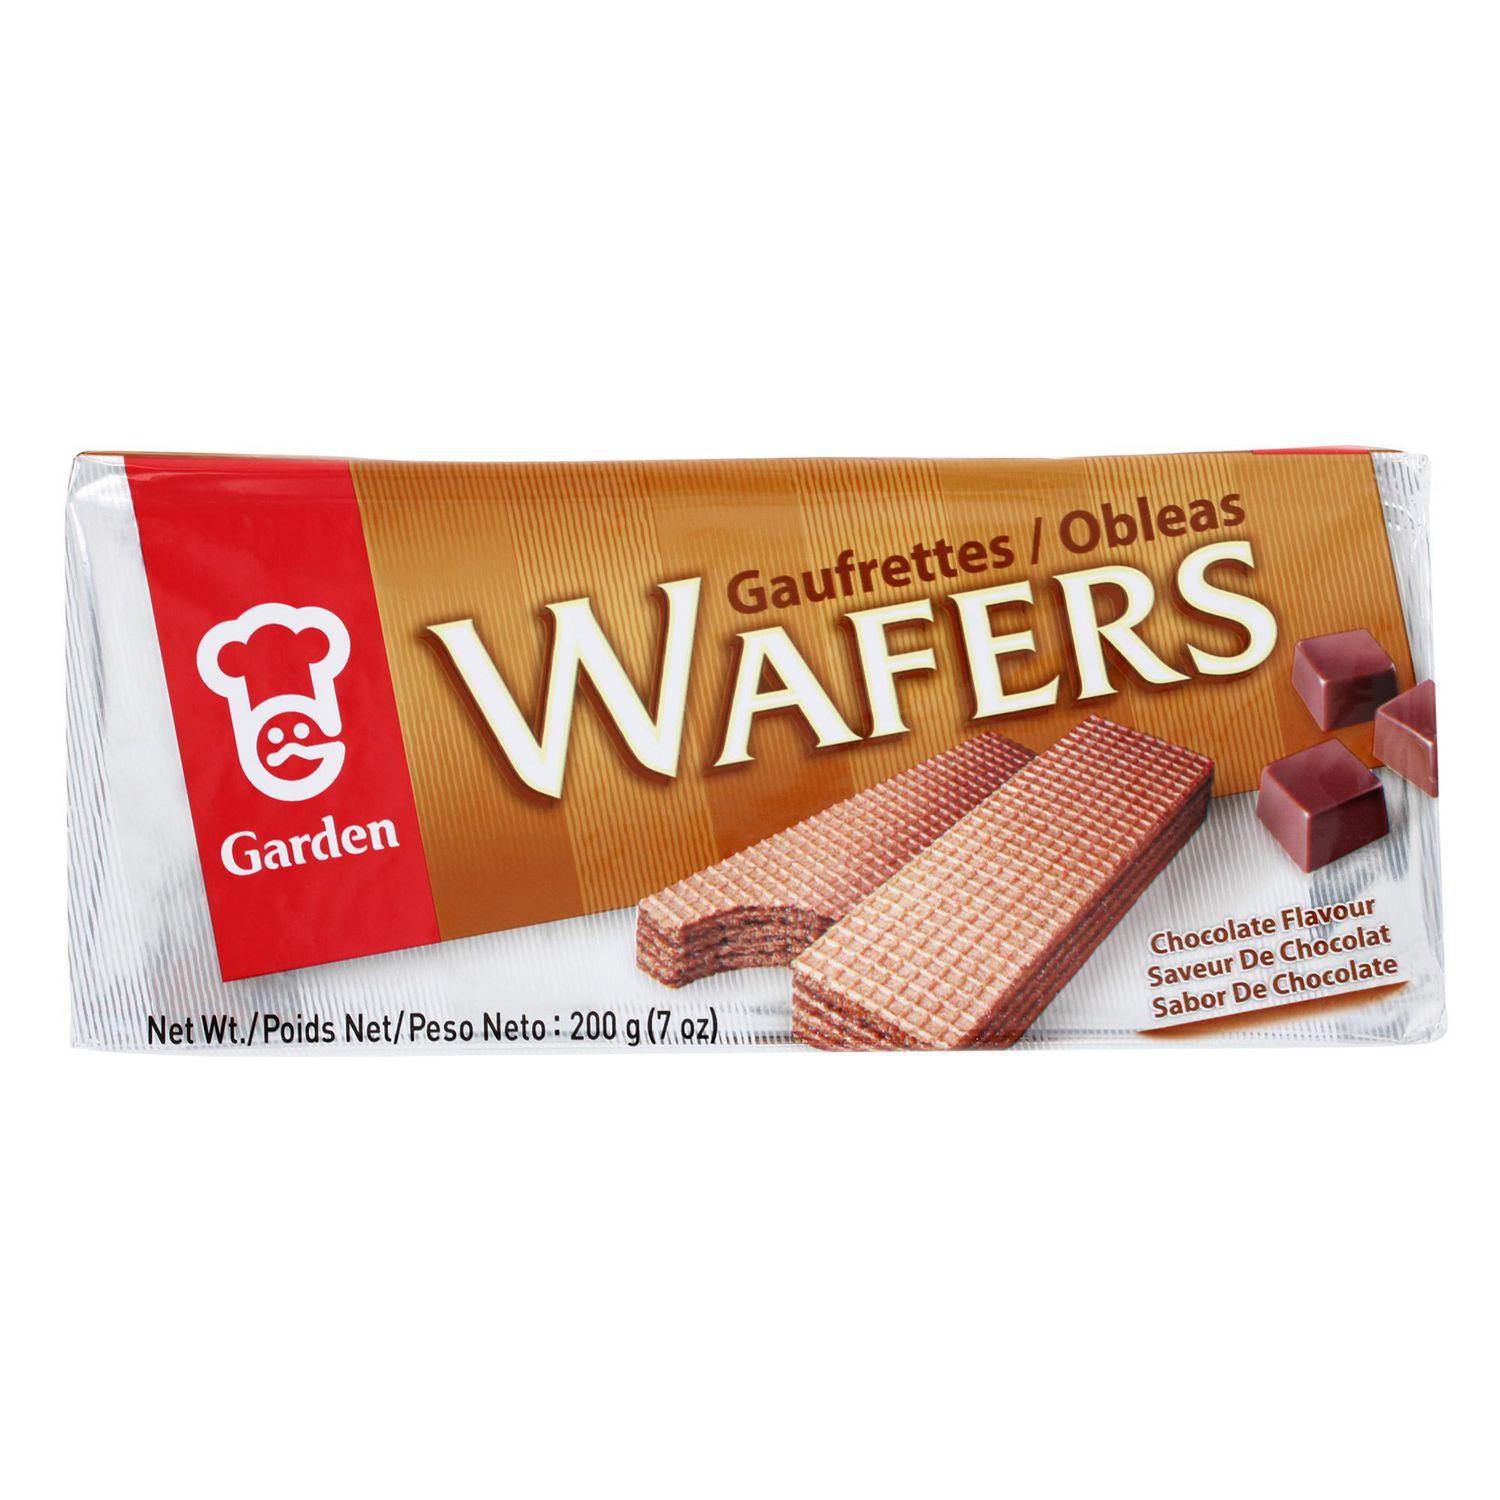 garden-wafers-chocolate-flavoured